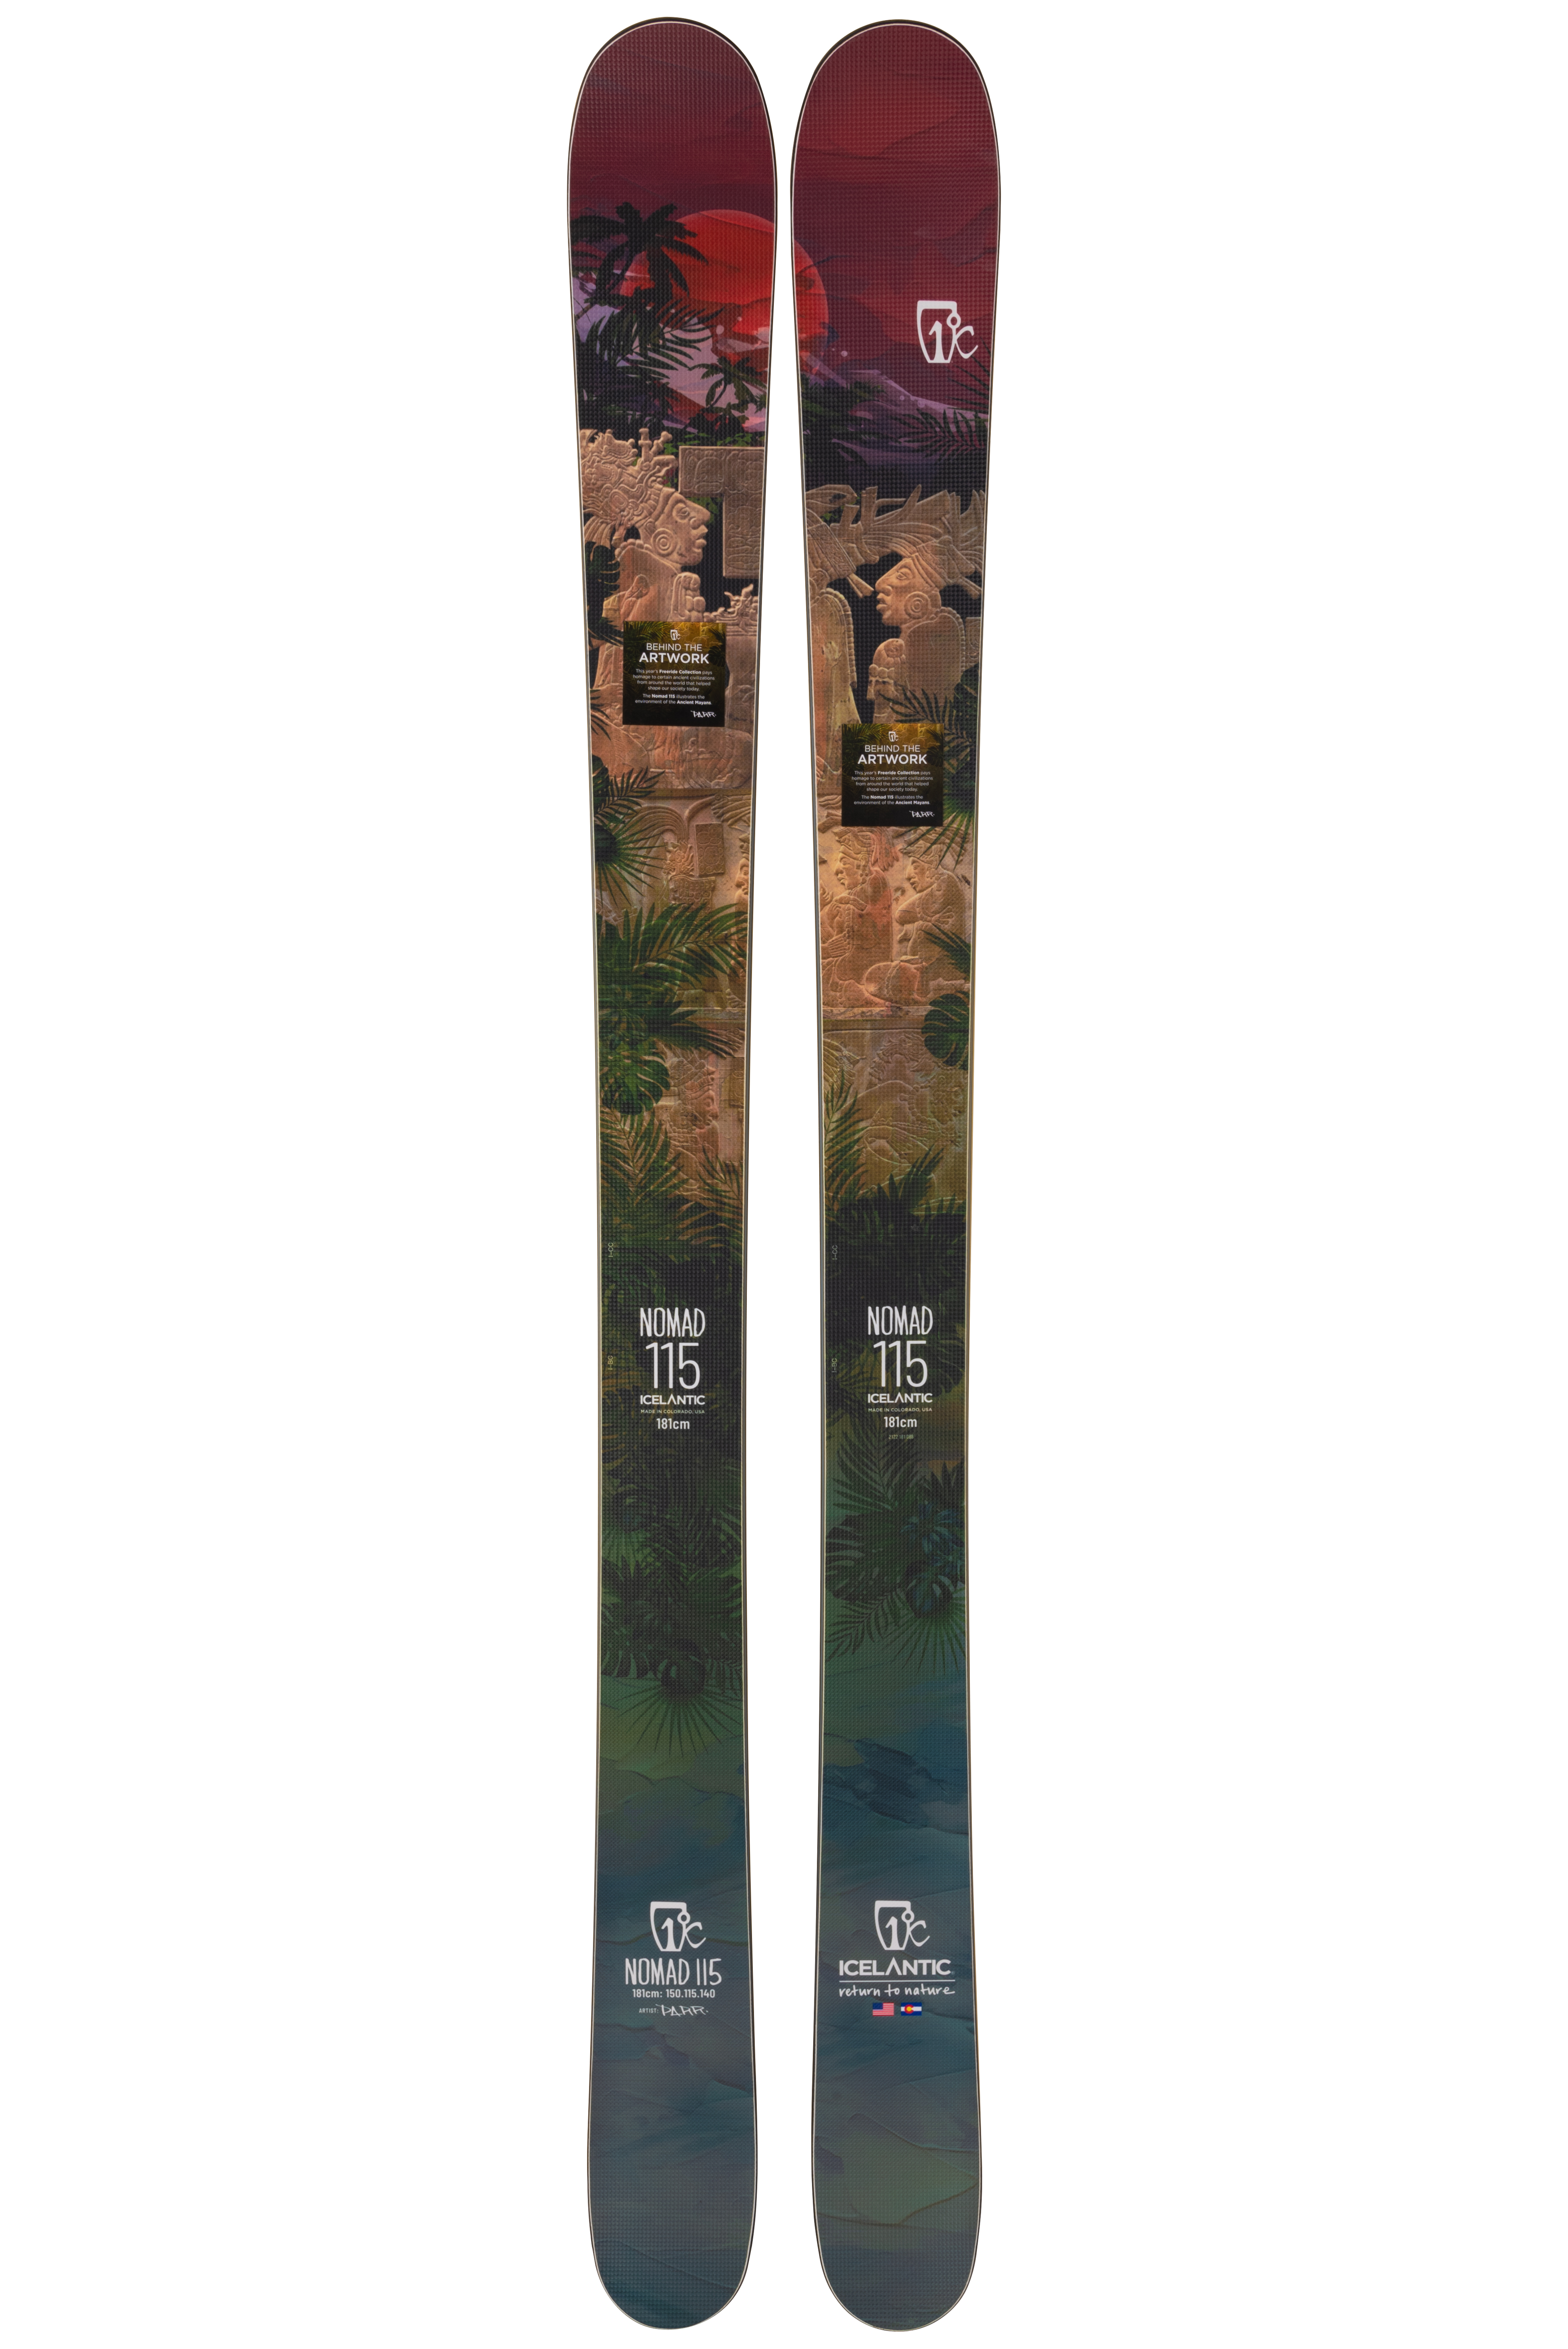 Купить лыжи с рокером Icelantic Nomad 115 2021/2022 181cm в Киеве